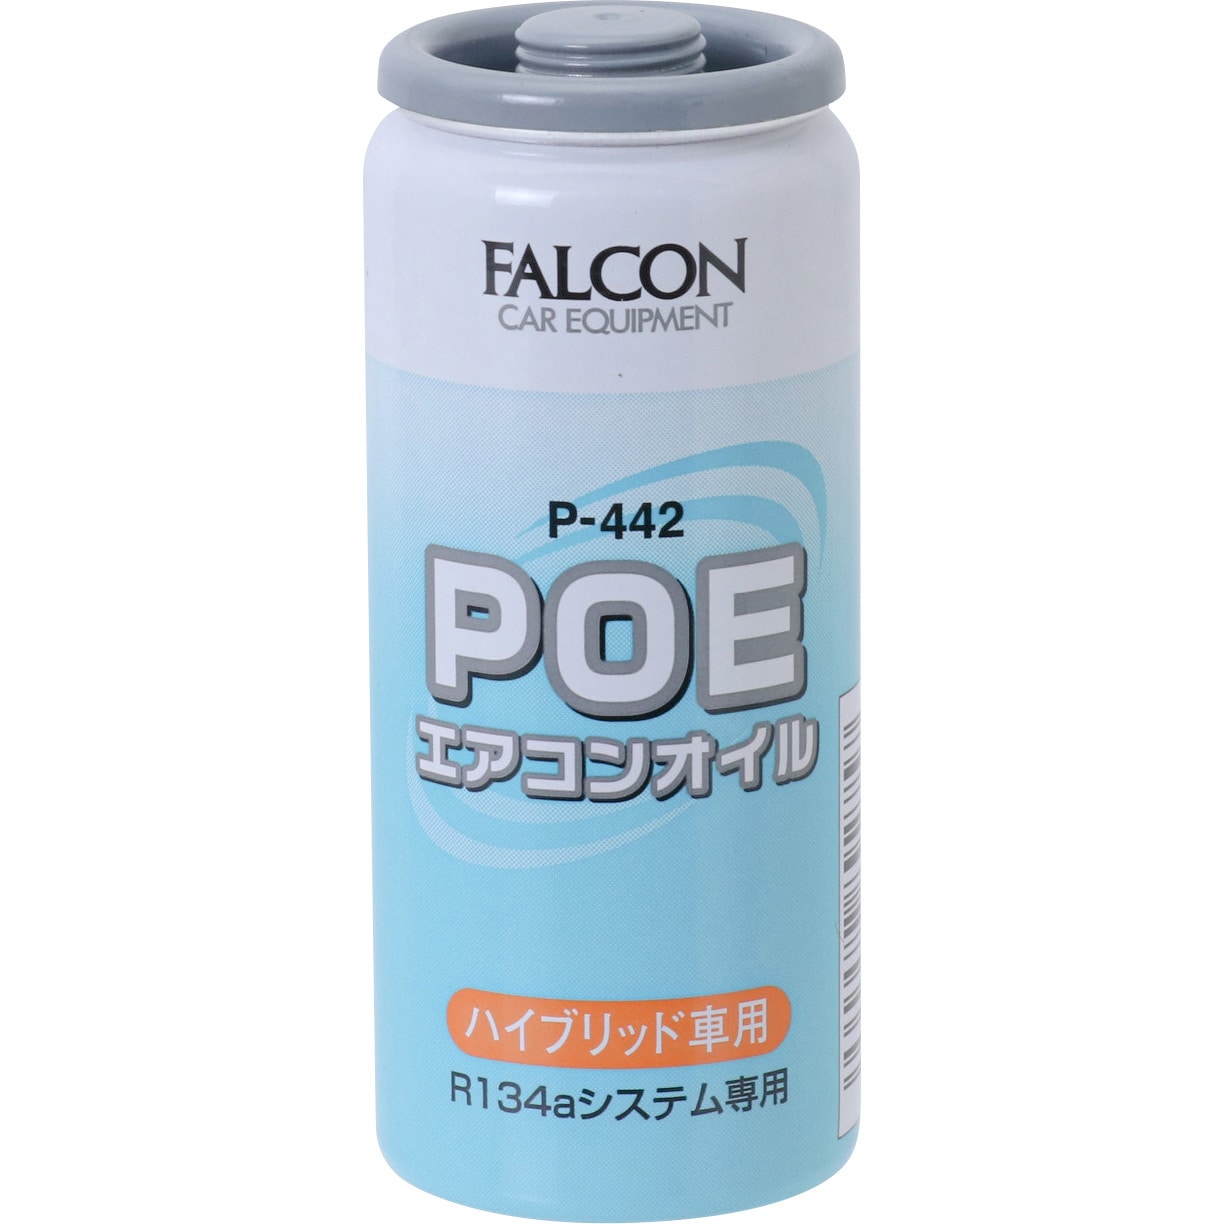 P 442 エアコンオイル Poe Falcon 危険物の数量 10ml P 442 1缶 通販モノタロウ